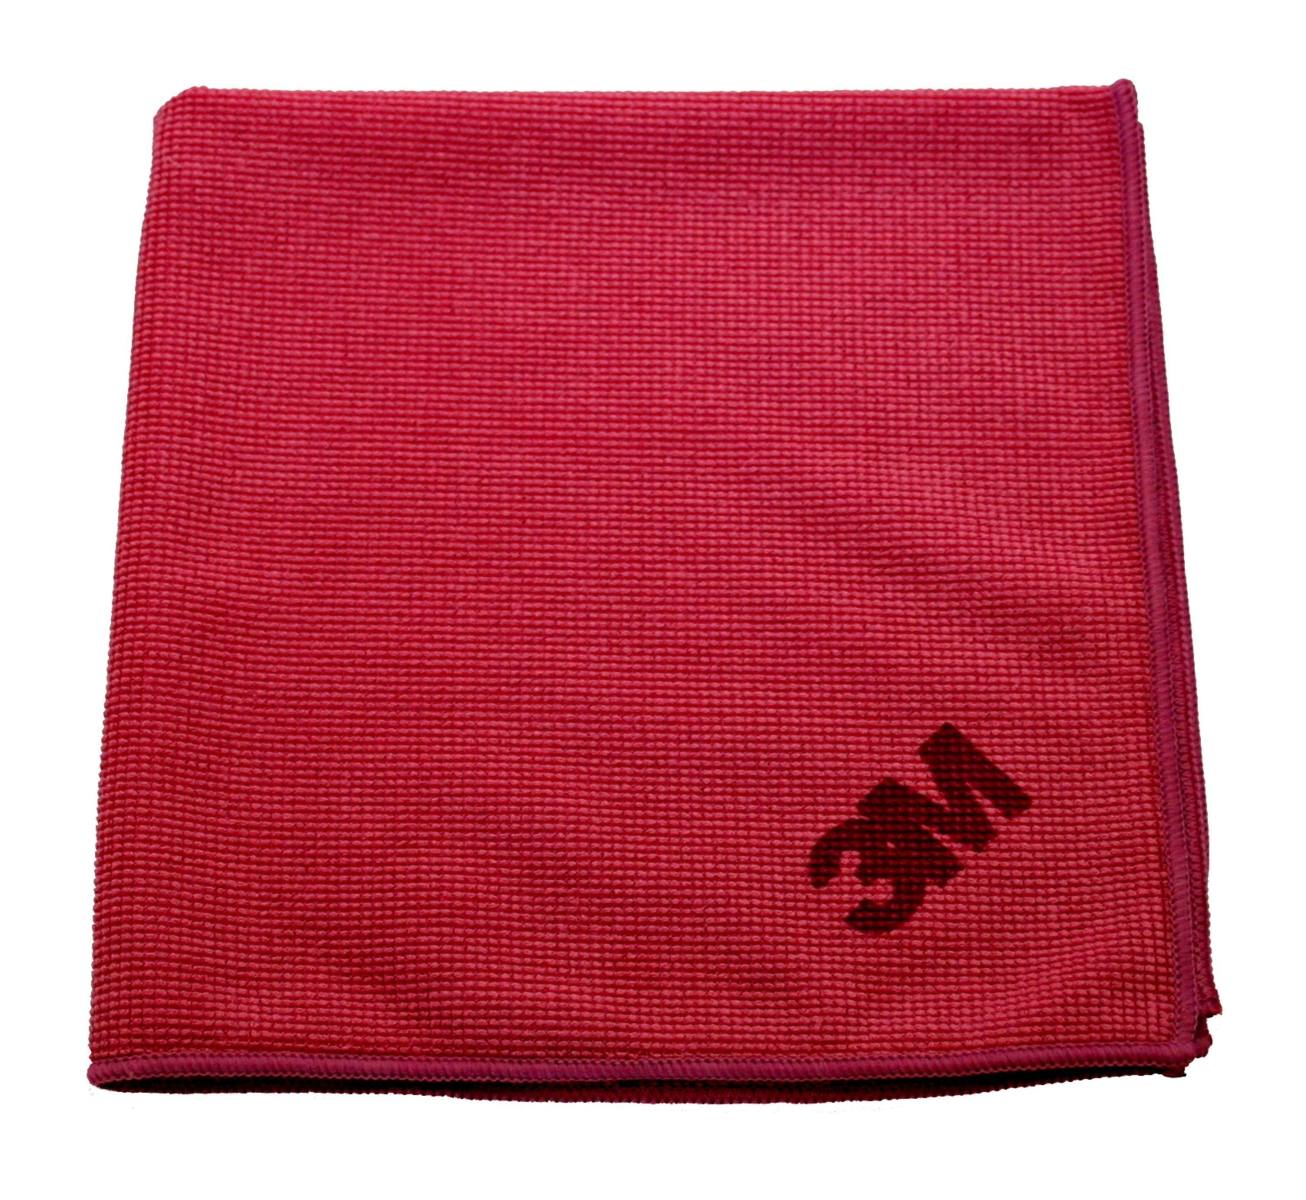 3M Scotch-Brite High-performance microfibre cloth 2011, red, 32 x 36 cm